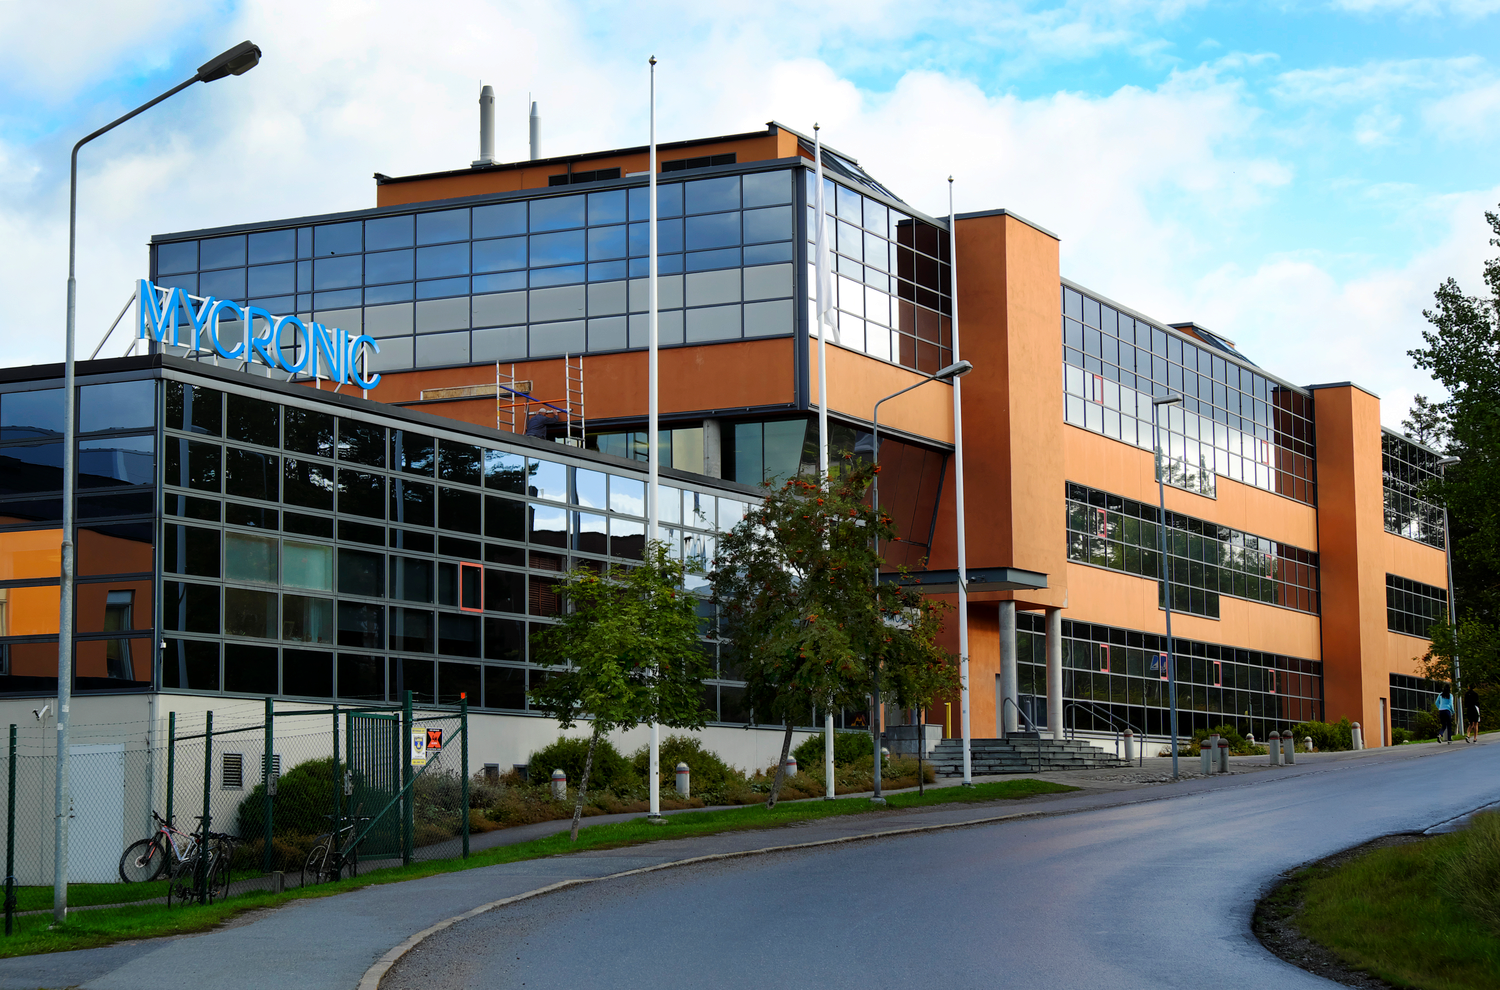 Fakta om Mycronic: Huvudkontoret i Täby, foto taget utifrån.